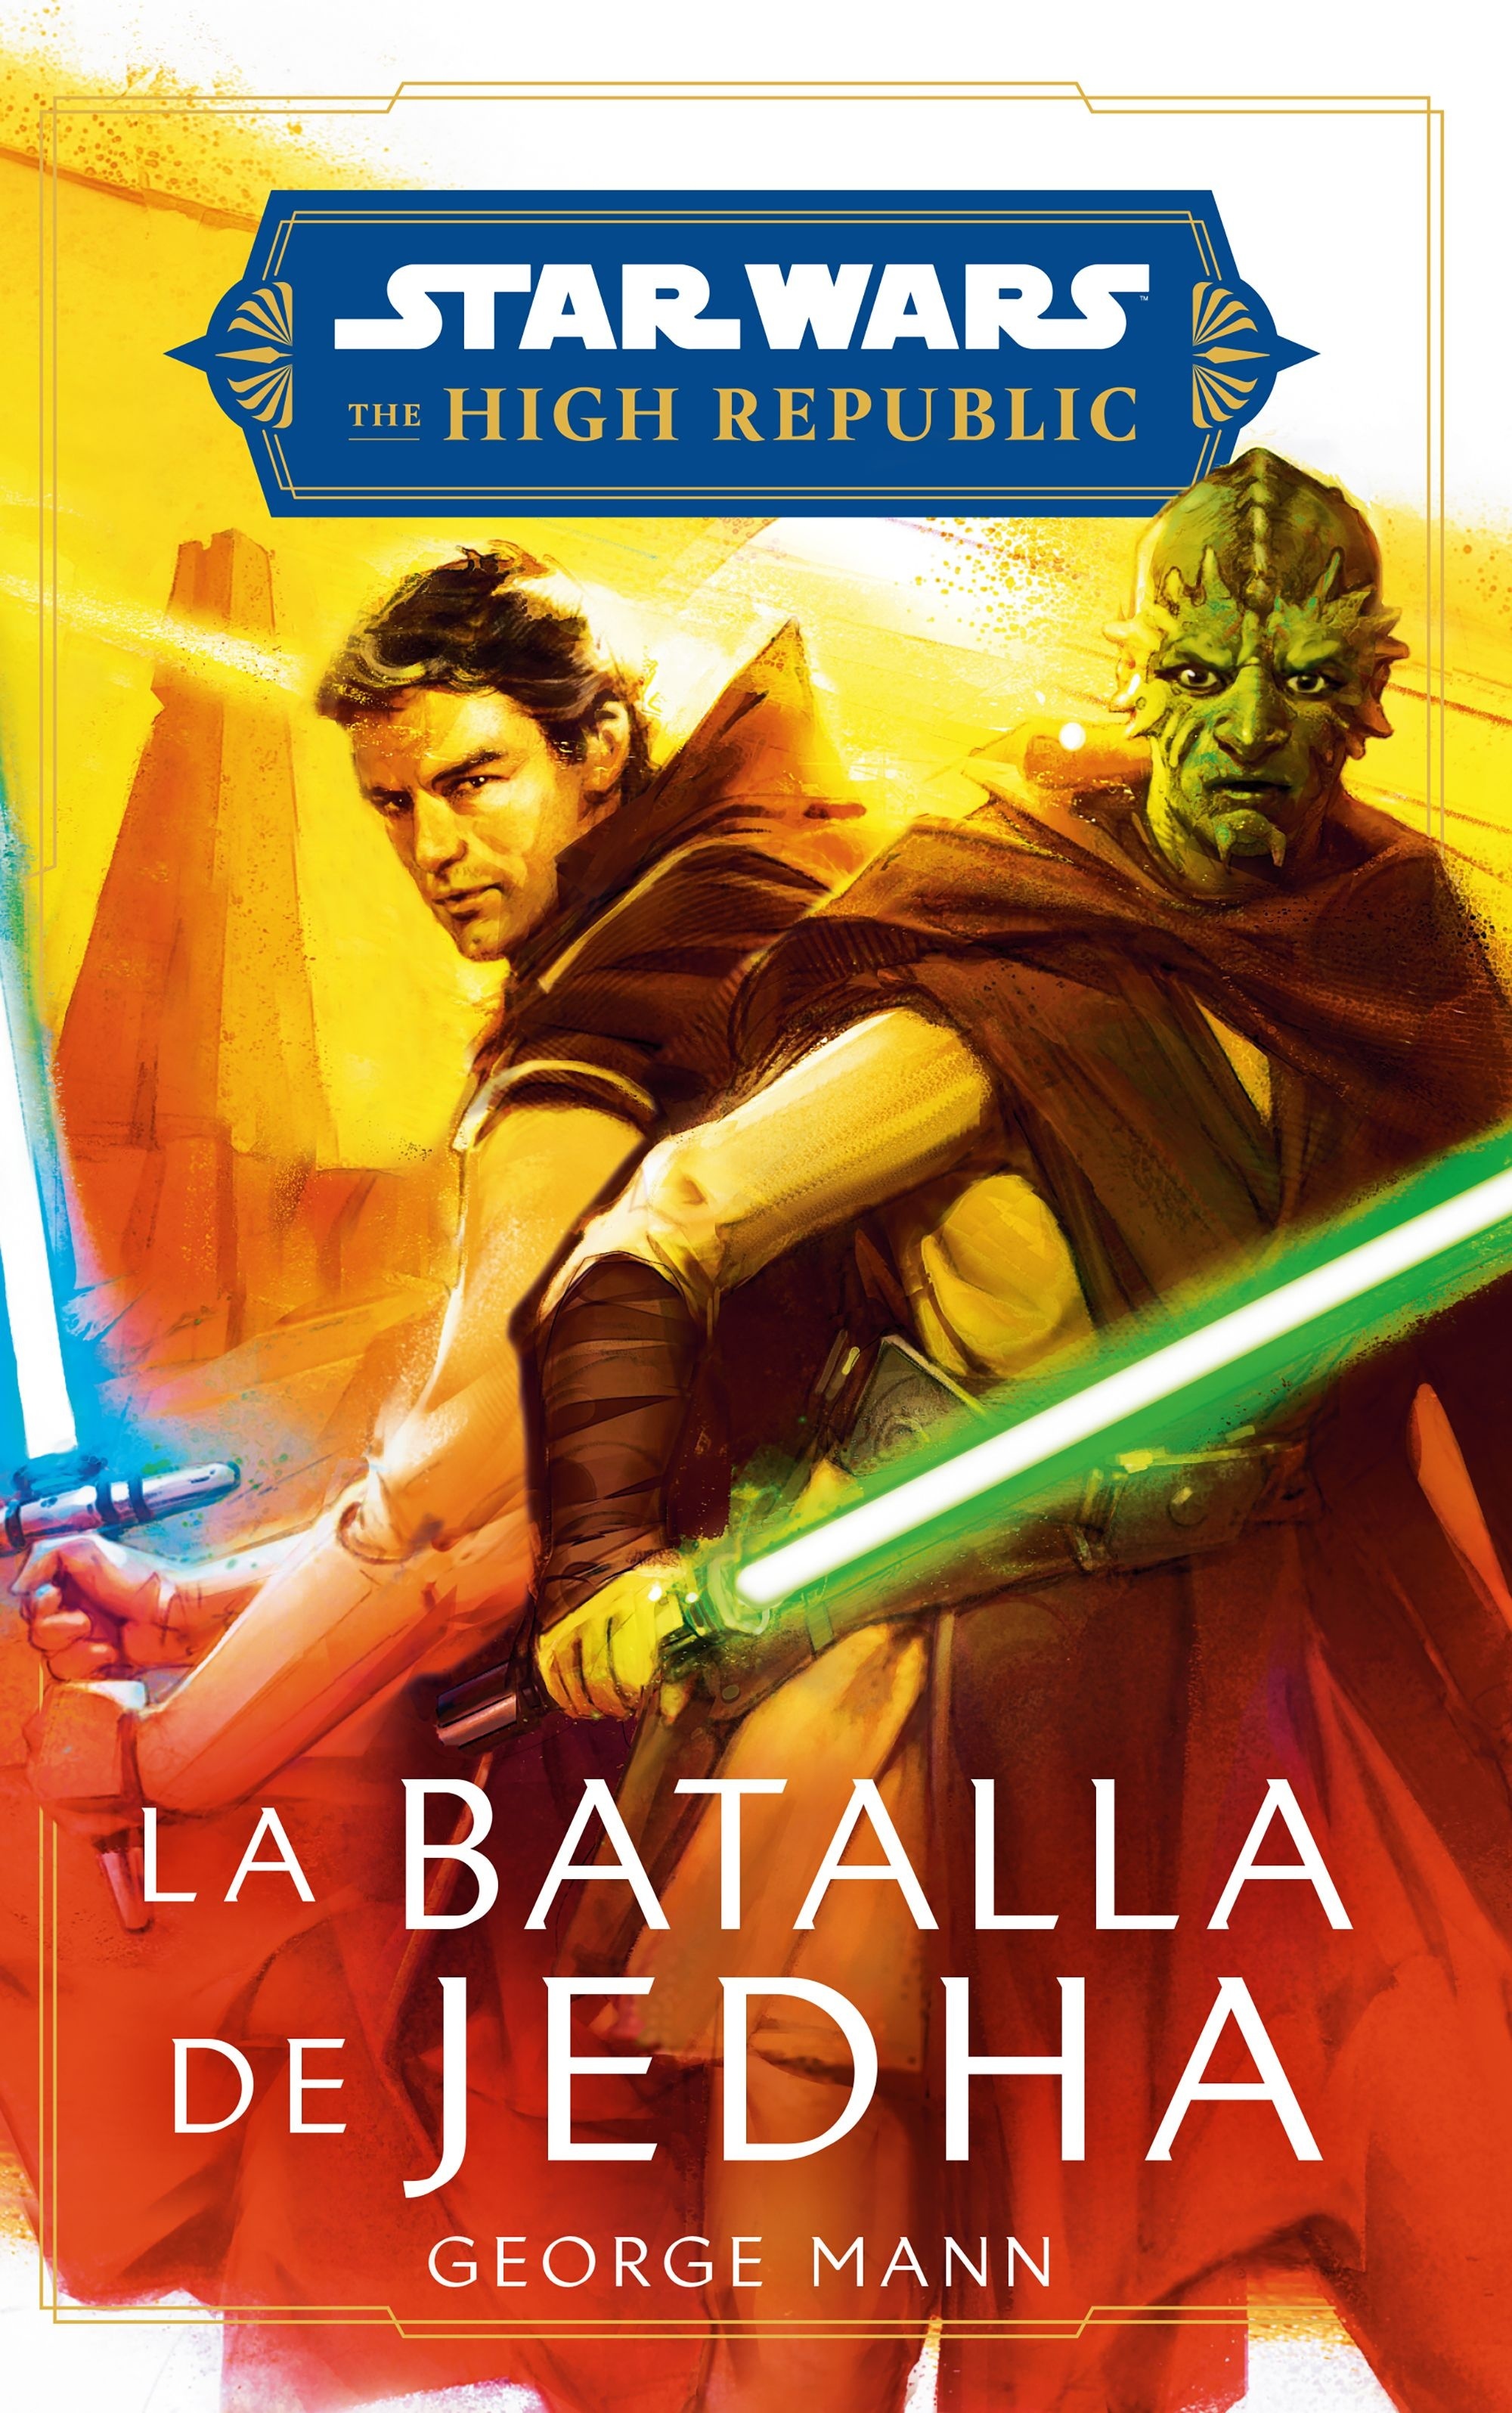 Star Wars. High Republic: La batalla de Jedha (novela). 